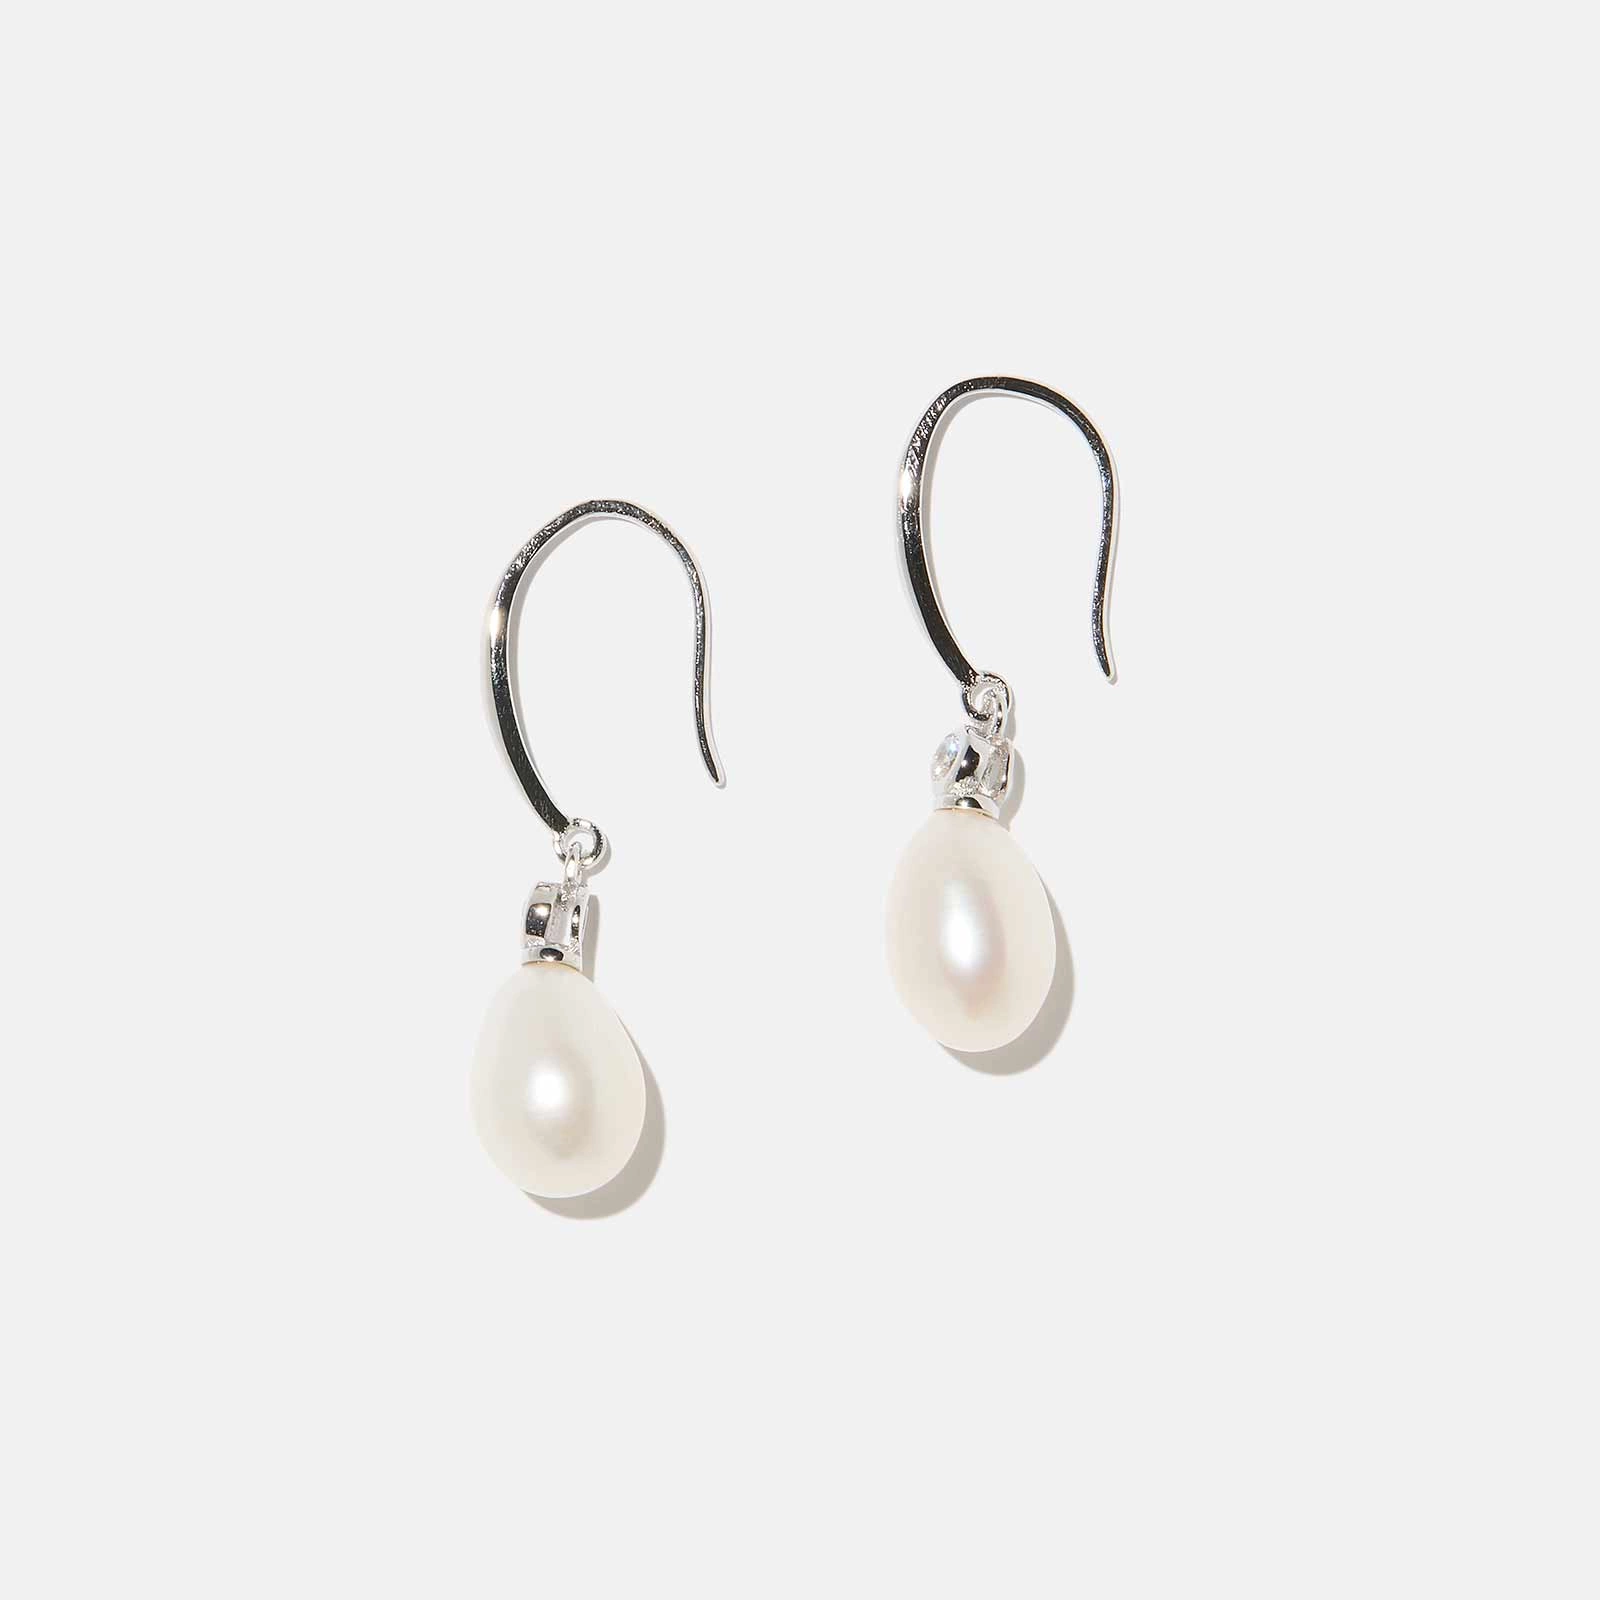 Örhängen i äkta silver - bågar, hängande ovala Shell pearls